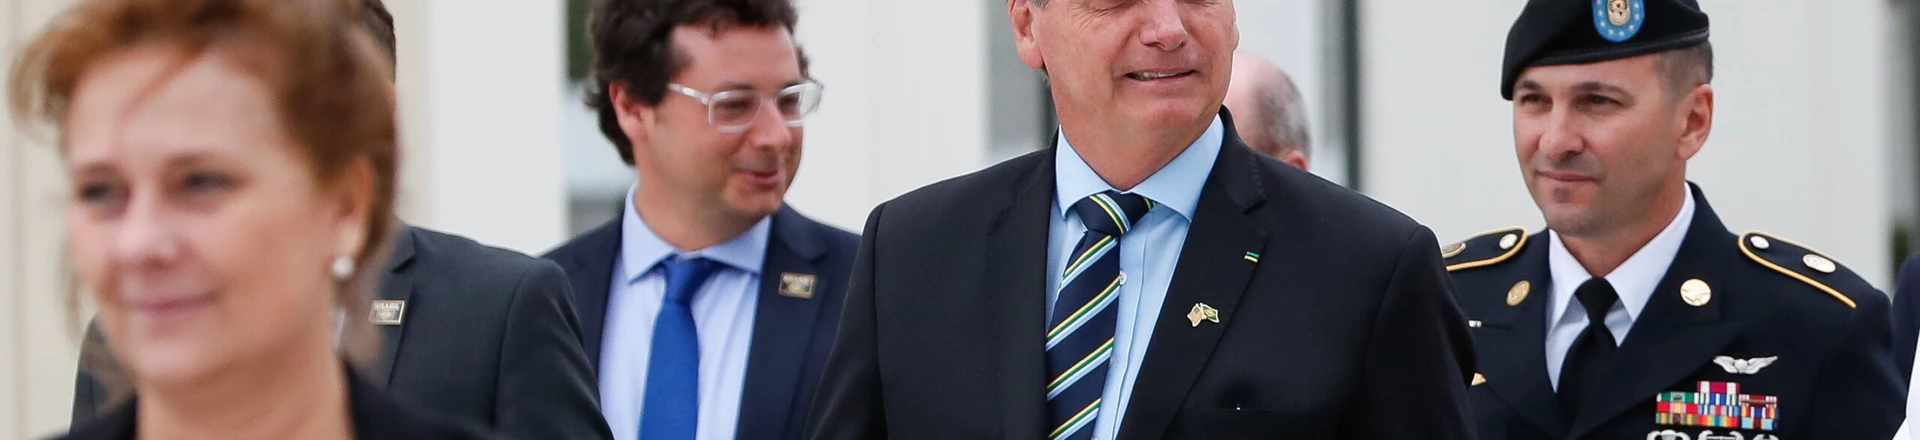 Fábio Wajngarten, segundo à esquerda, acompanhou Bolsonaro na viagem aos EUA. Ambos encontraram Trump. O secretário teve doença do coronavírus confirmada. Foto: Alan Santos/PR